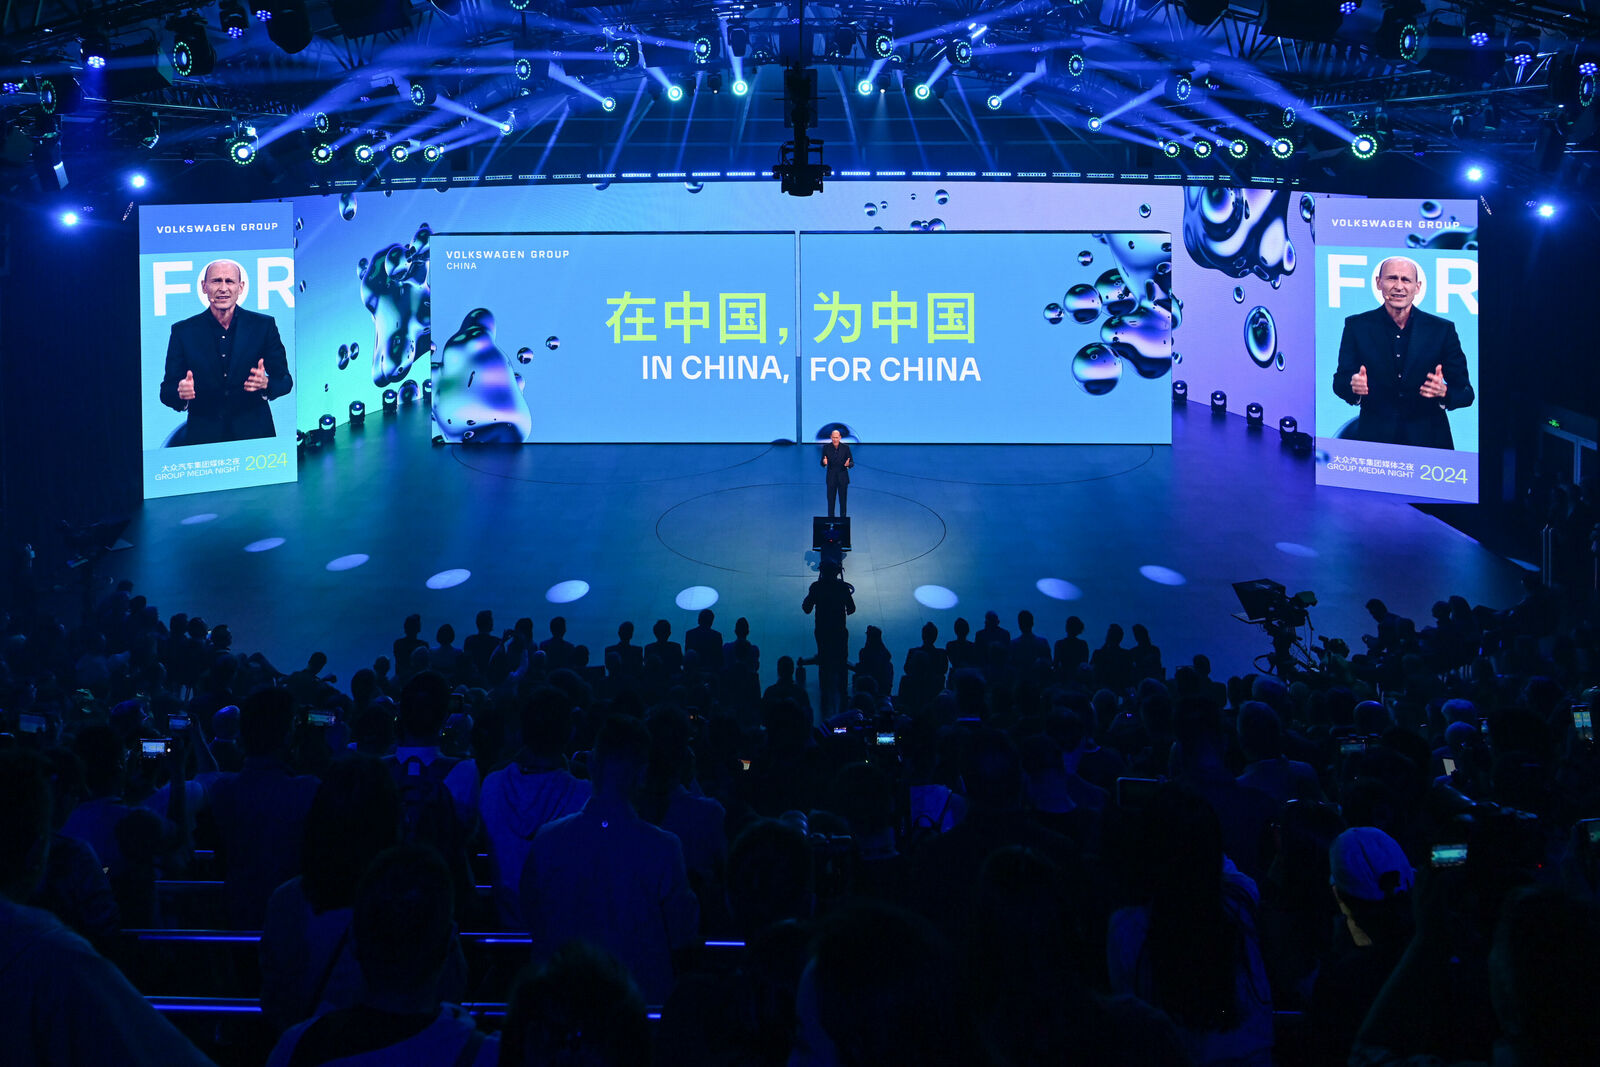 Ein Redner steht in der Mitte einer hell beleuchteten Bühne und spricht vor einem großen Publikum. Der Hintergrund zeigt den Slogan "IN CHINA, FOR CHINA" in Englisch und Chinesisch und hebt den strategischen Fokus der Volkswagen-Gruppe auf den chinesischen Markt hervor.